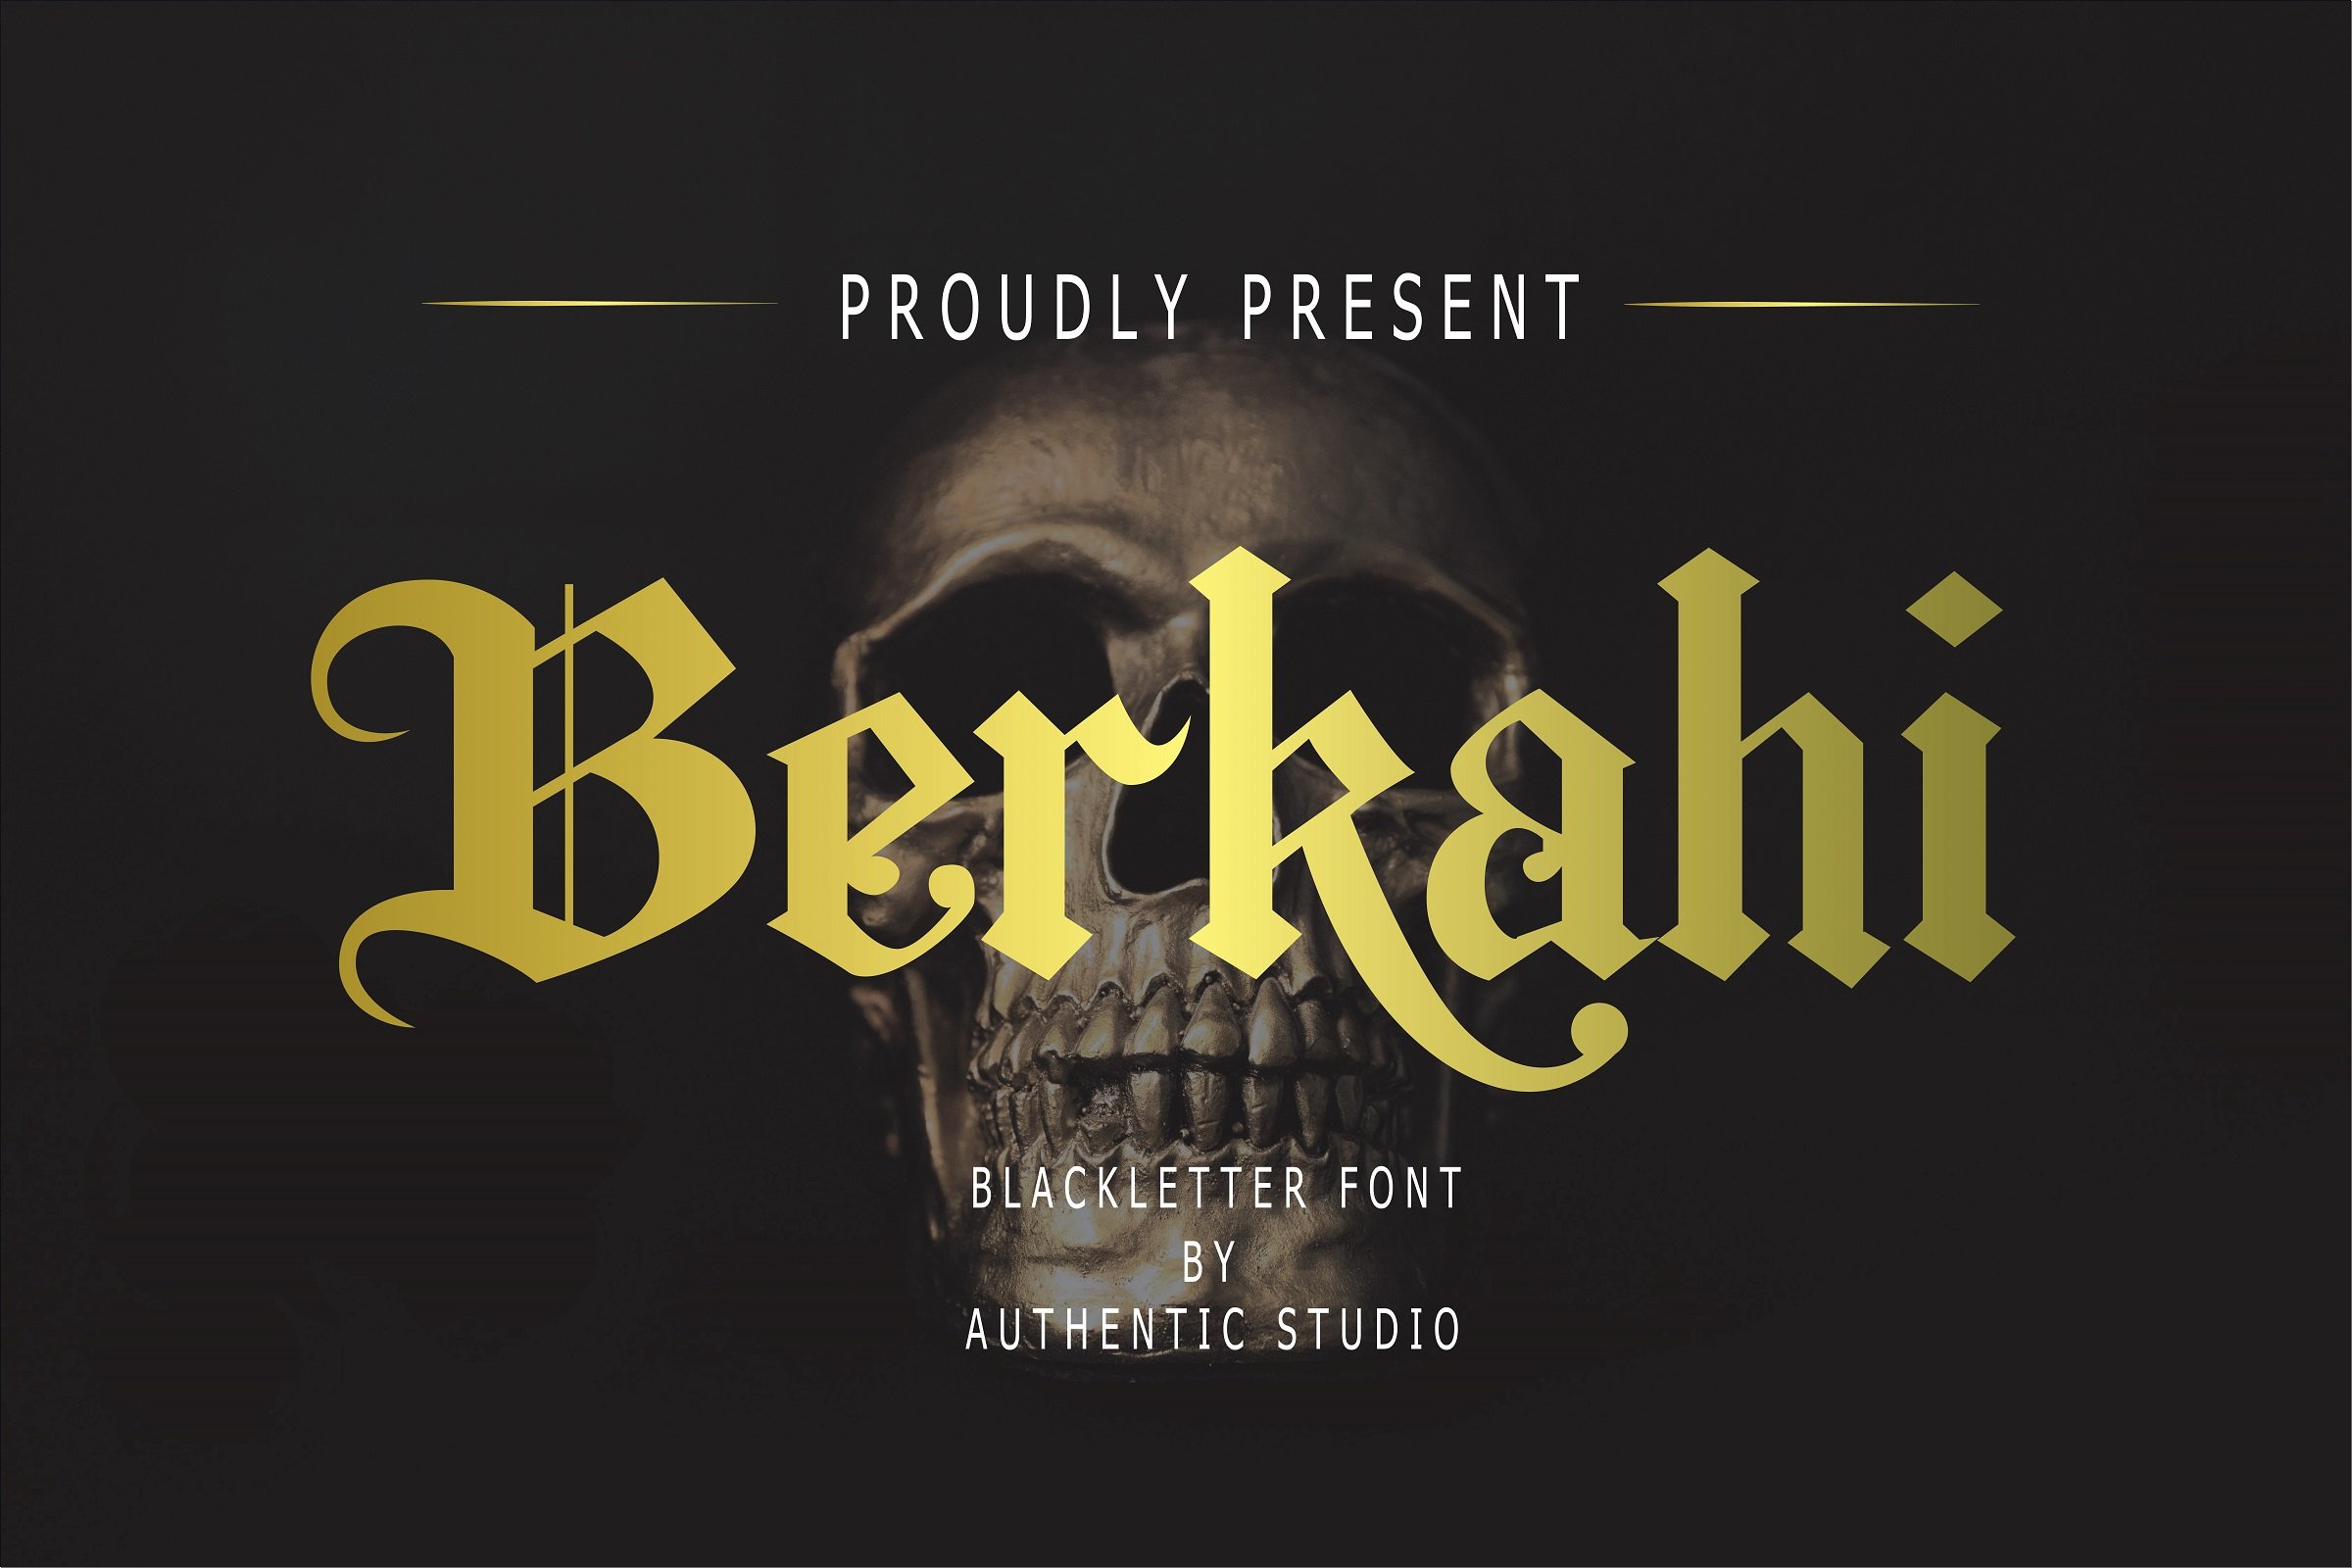 Berkahi Blackletter Font cover image.